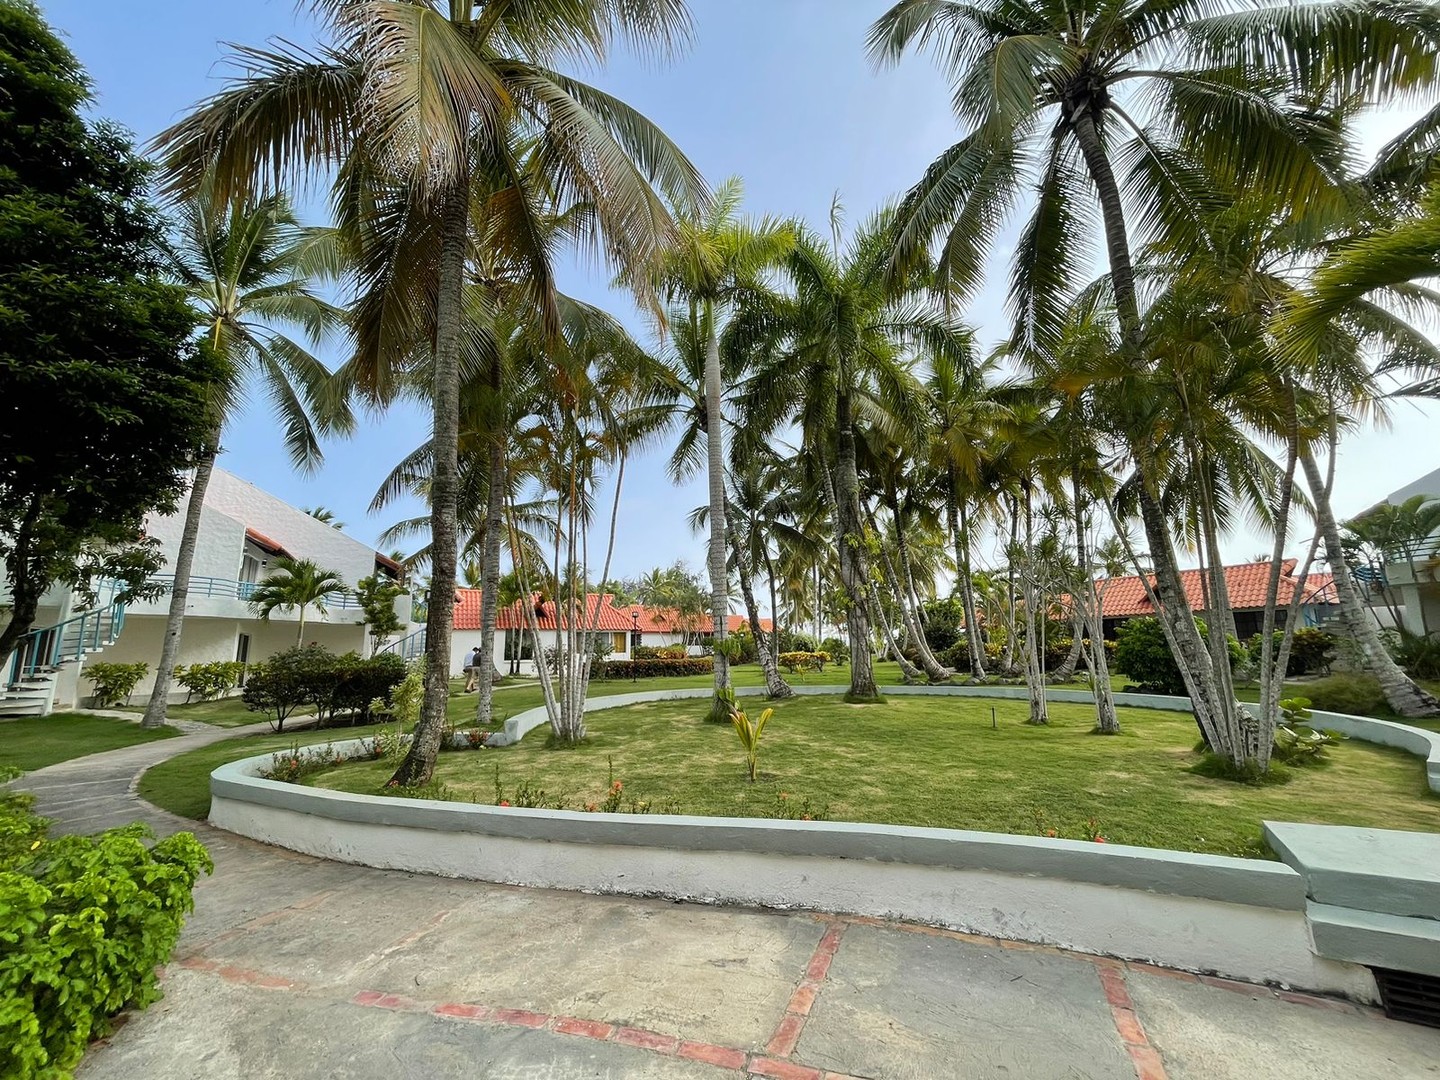 casas vacacionales y villas - Vendo Villa en Complejo Turístico en Boca Chica en 1er Línea de Mar
CÓDI: PD259 0